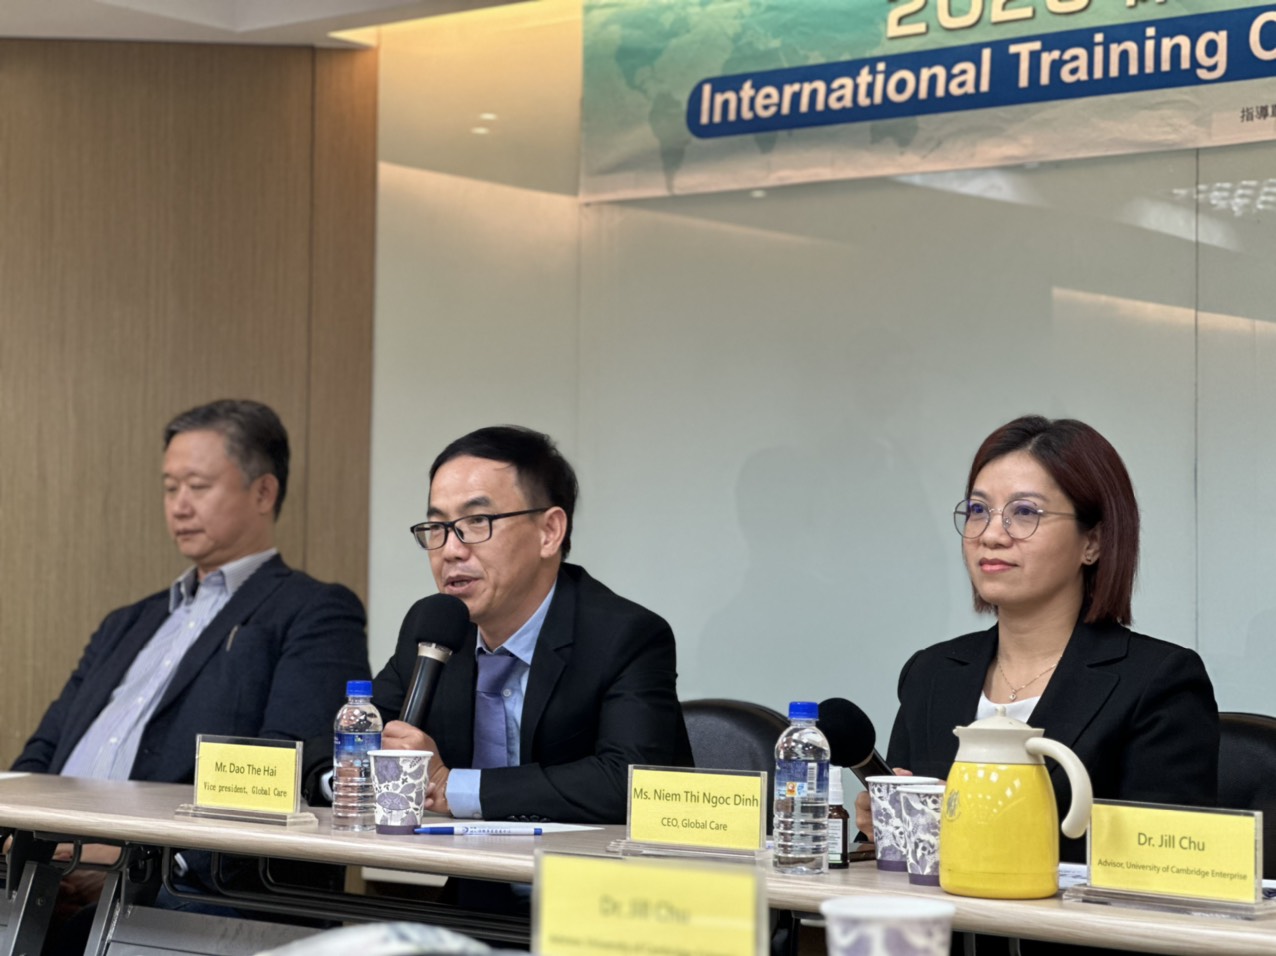 Global Care giới thiệu nền tảng chuyển đổi số bảo hiểm tại Đài Loan - 1